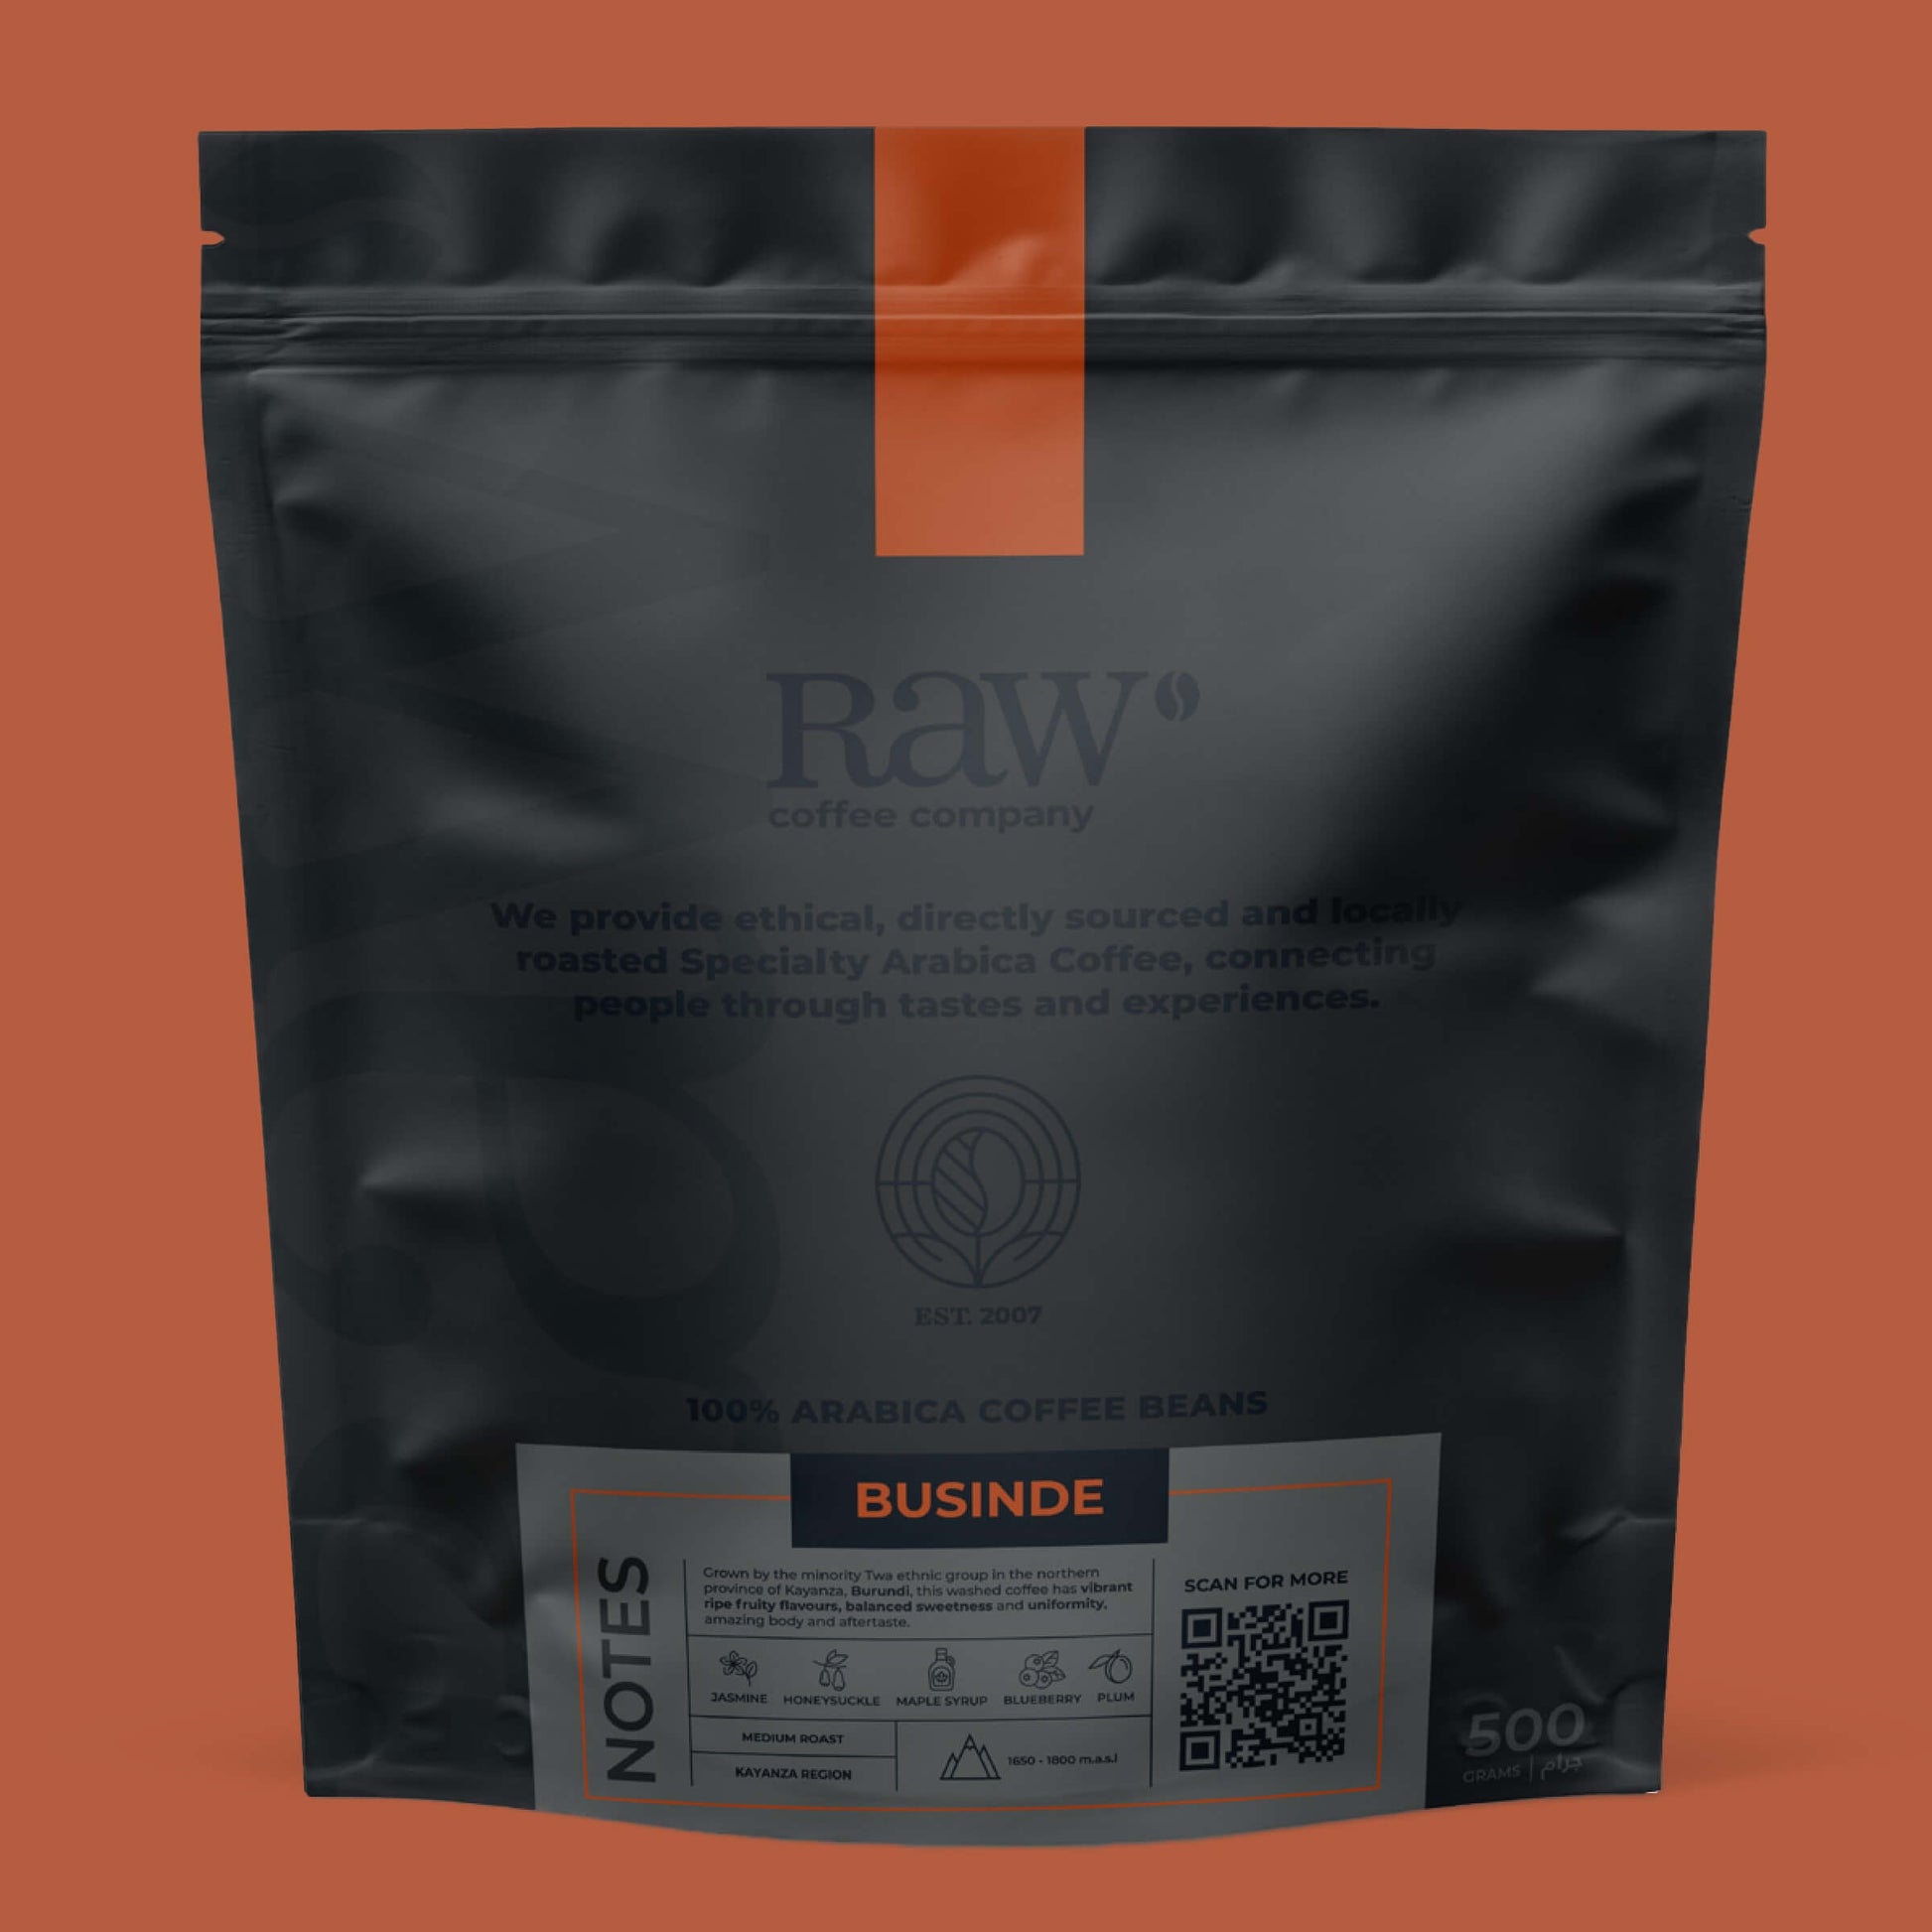 Burundi-Businde-Coffee-500gm_RAW-Coffee-Company